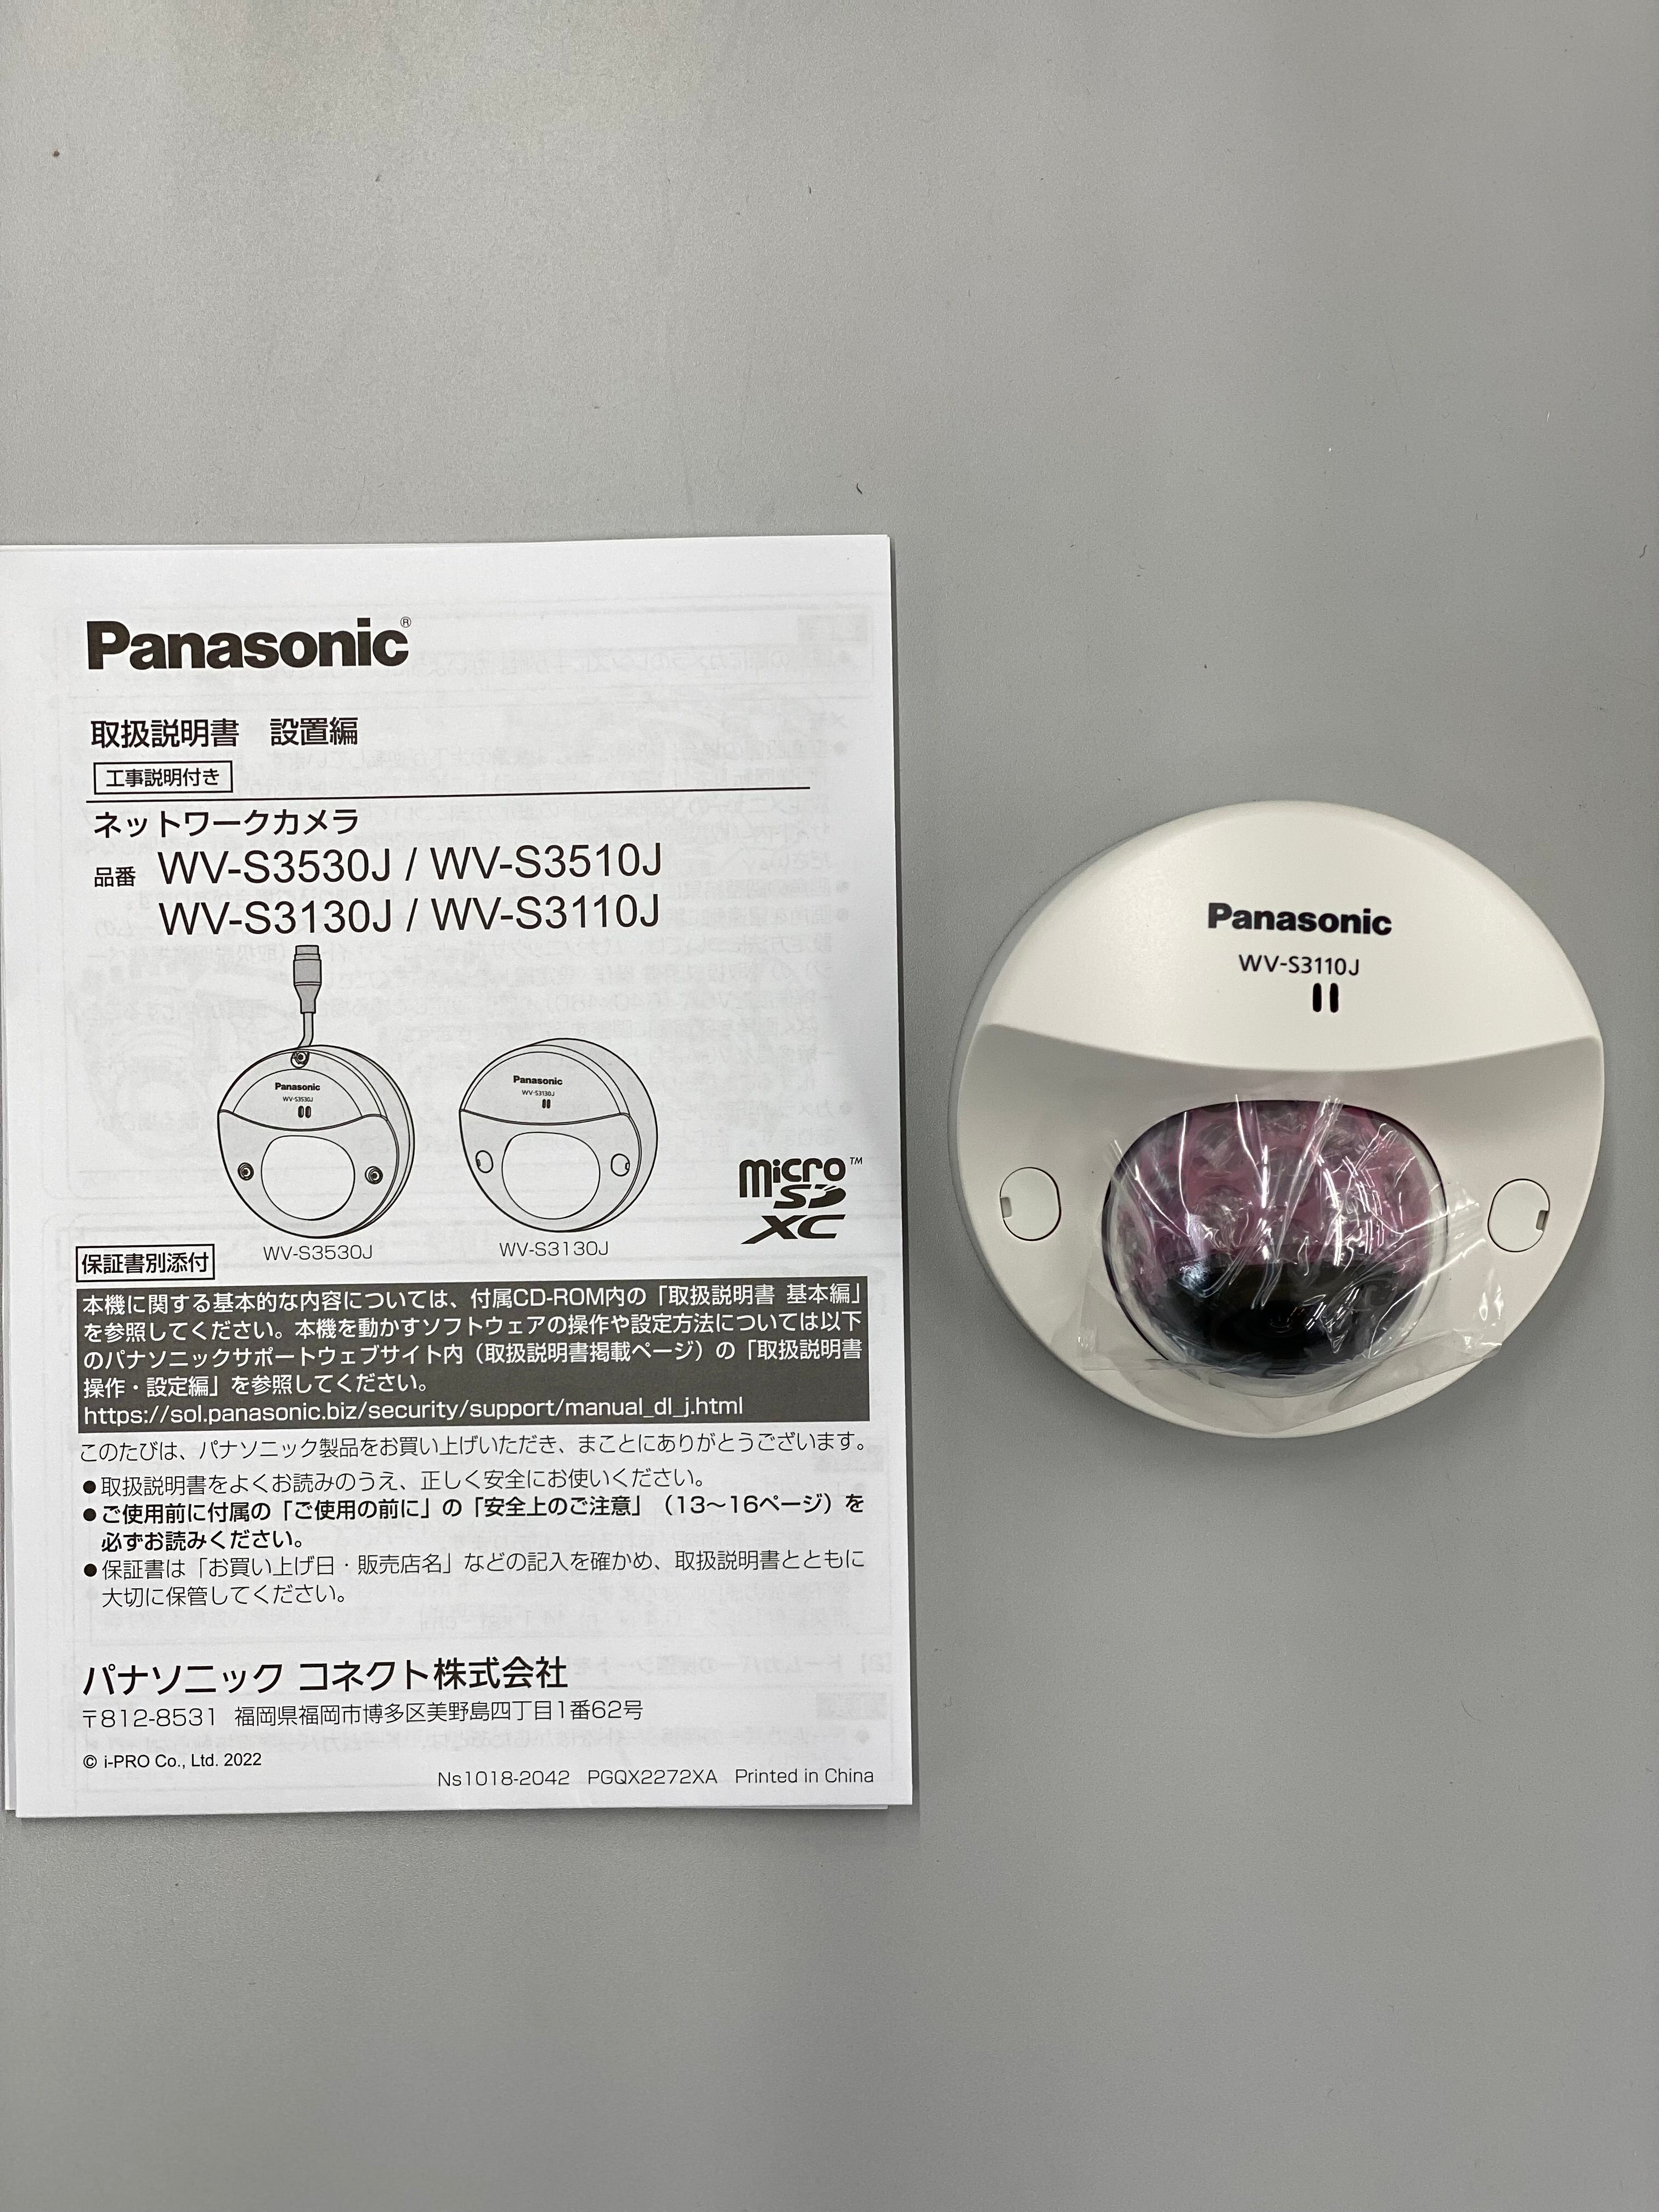 Panasonic 屋内対応 HD ドームネットワークカメラ WV-S3110J